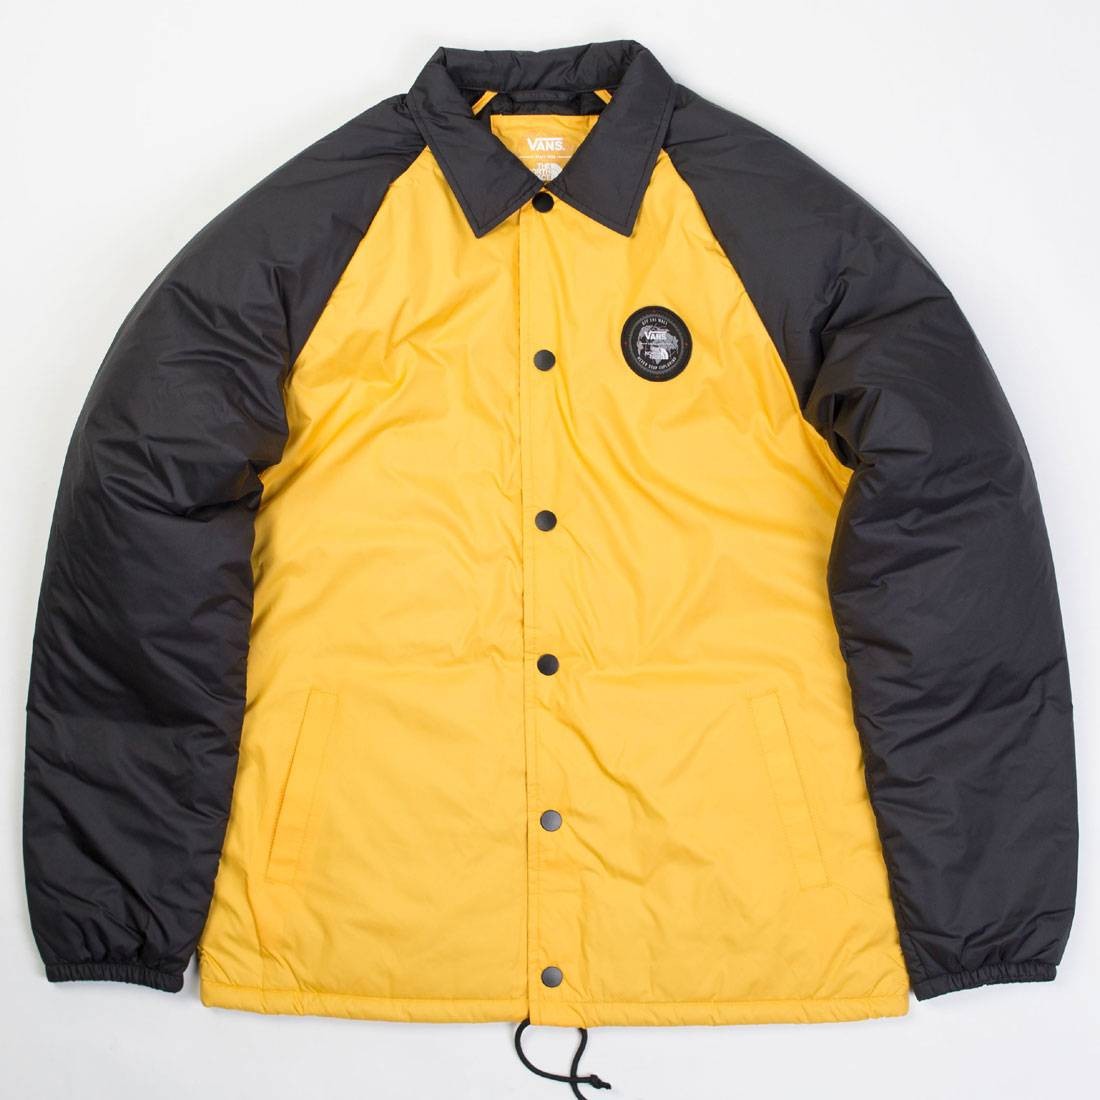 vans torrey jacket yellow